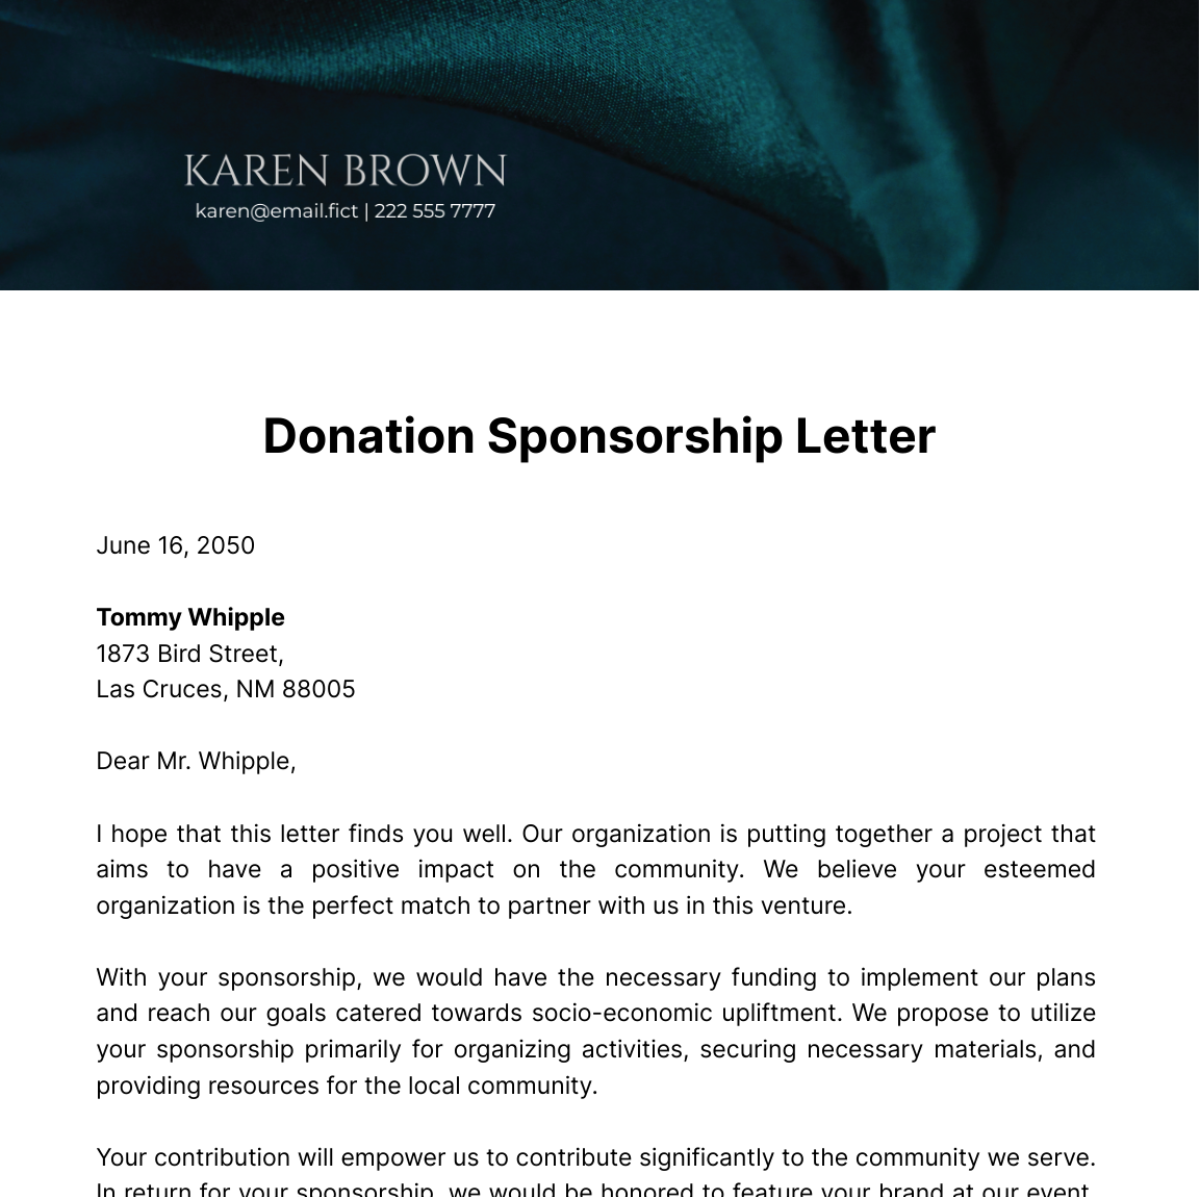 Donation Sponsorship Letter Template